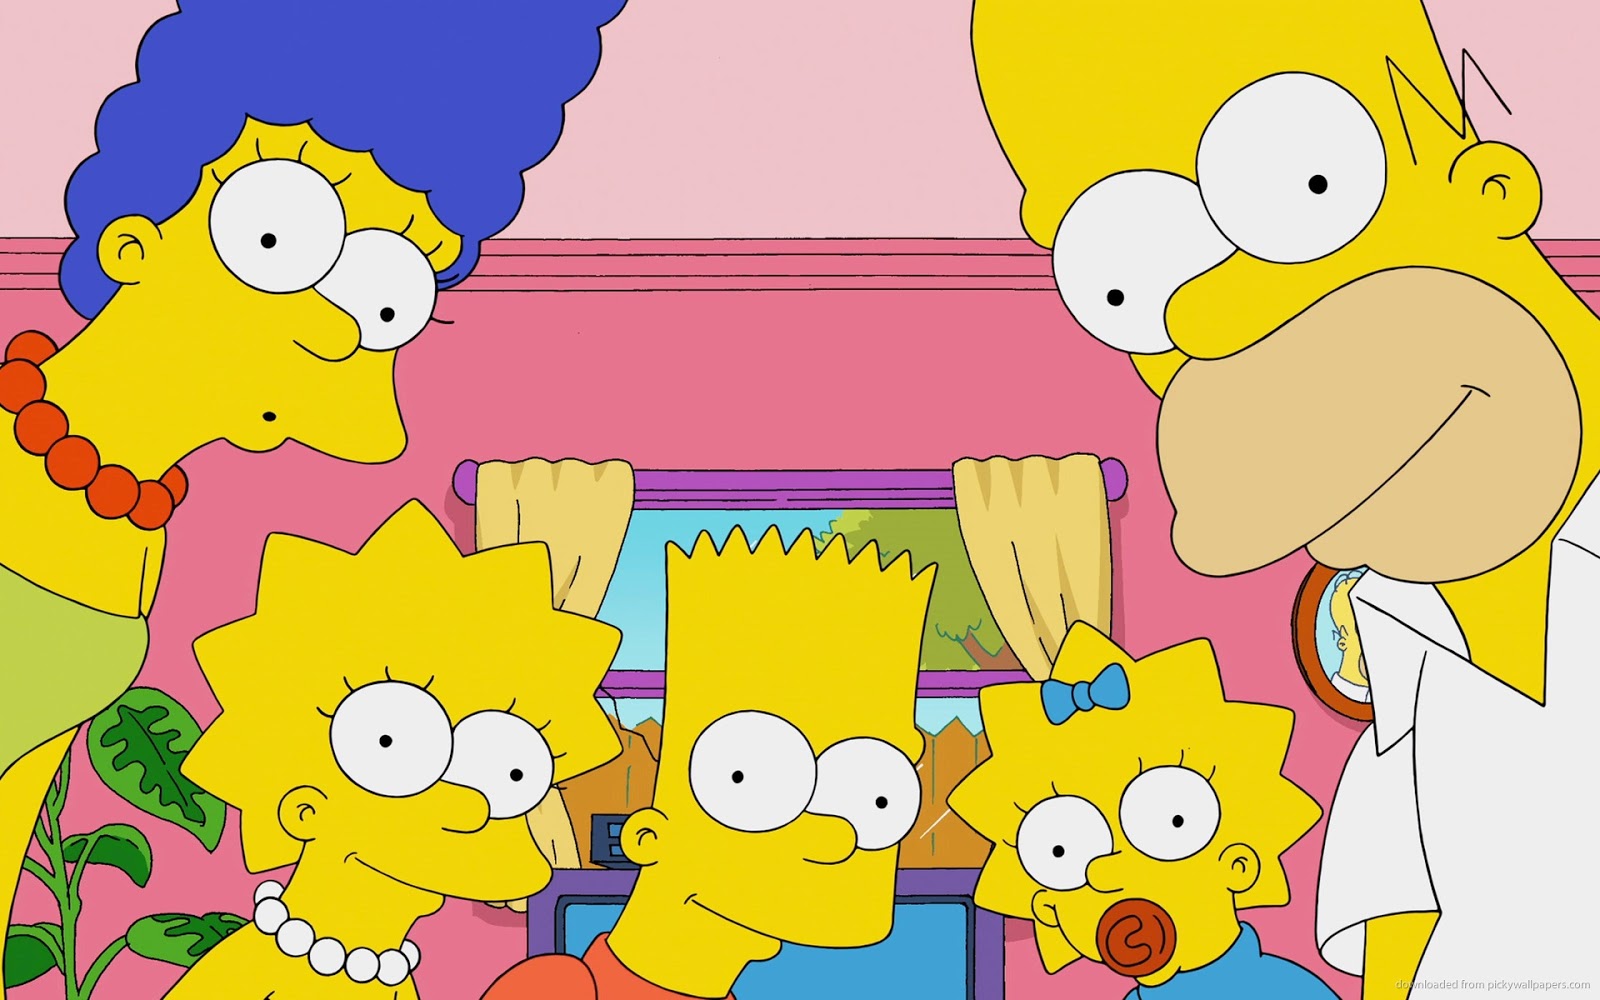 como desenhar o Bart Simpsons triste e apaixonado 